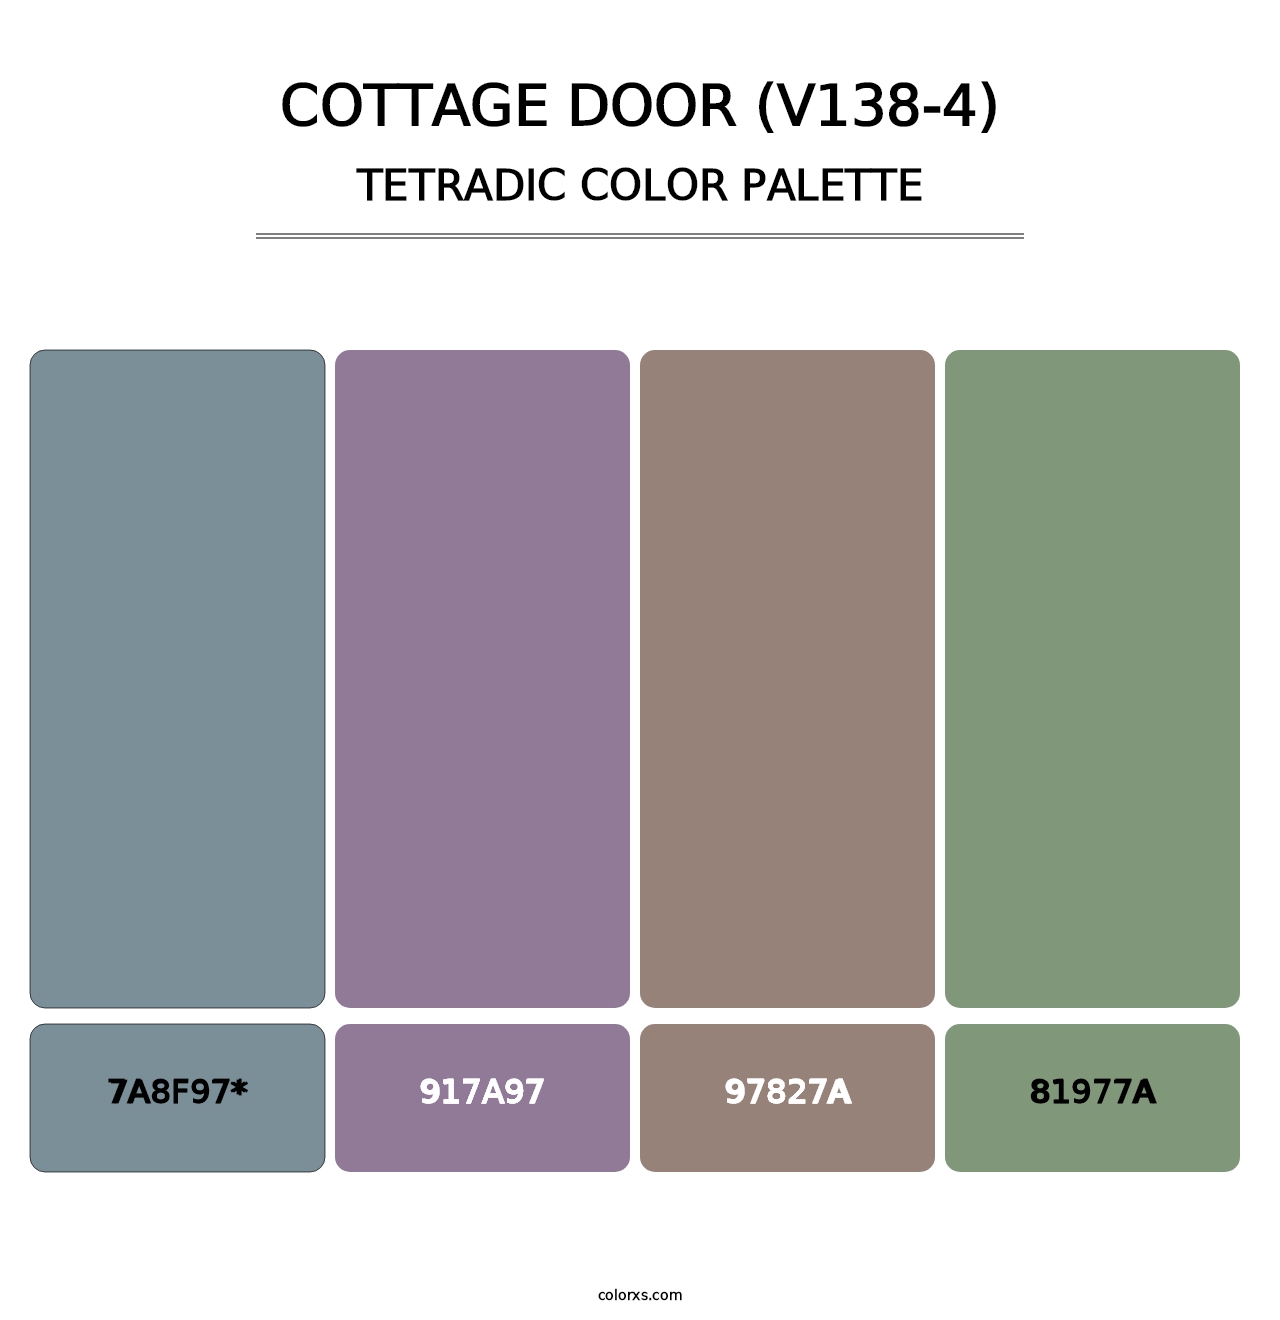 Cottage Door (V138-4) - Tetradic Color Palette